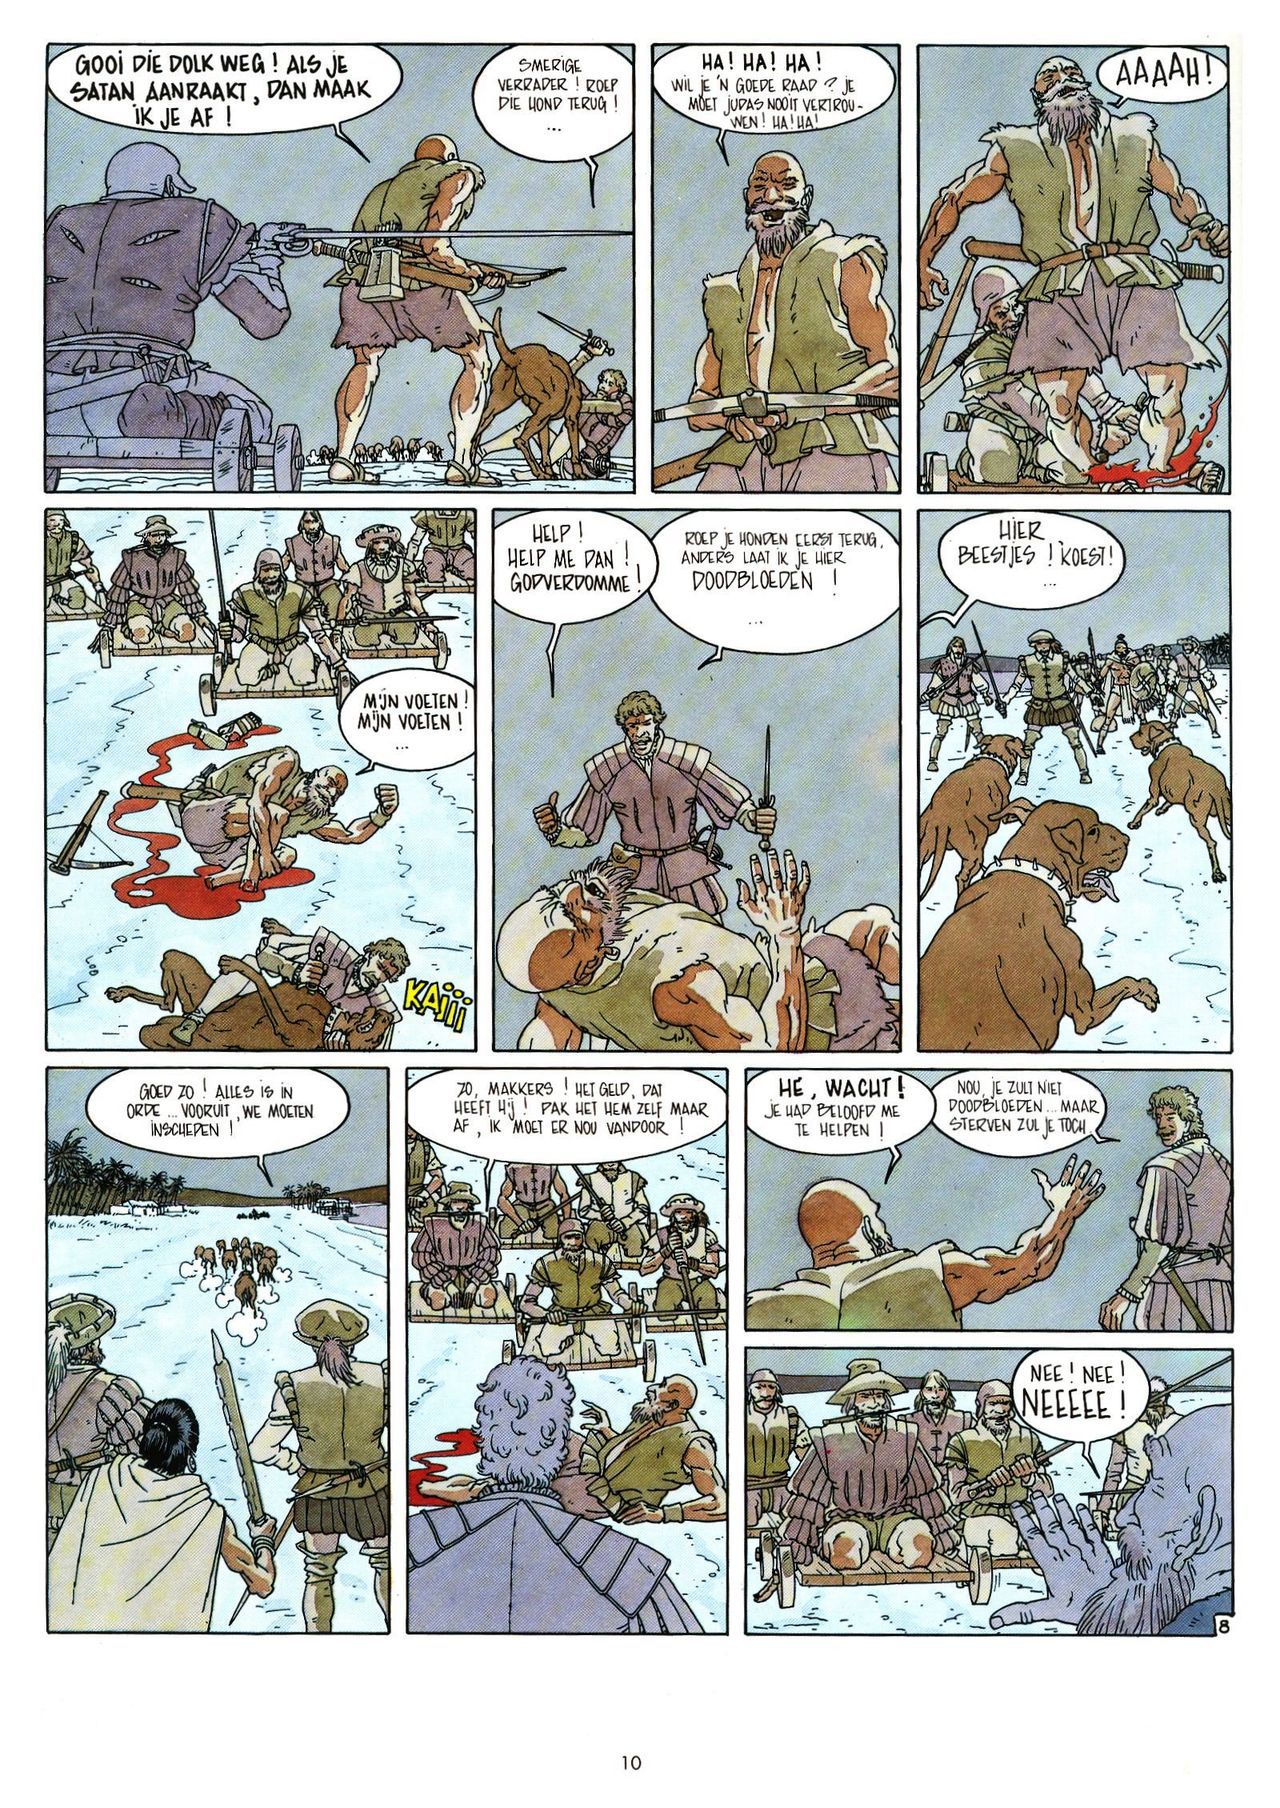 Eldorado - 03 - De Jaguarmensen (Dutch) Franstalige strips die op deze site staan, hier is de Nederlandse uitgave! 10